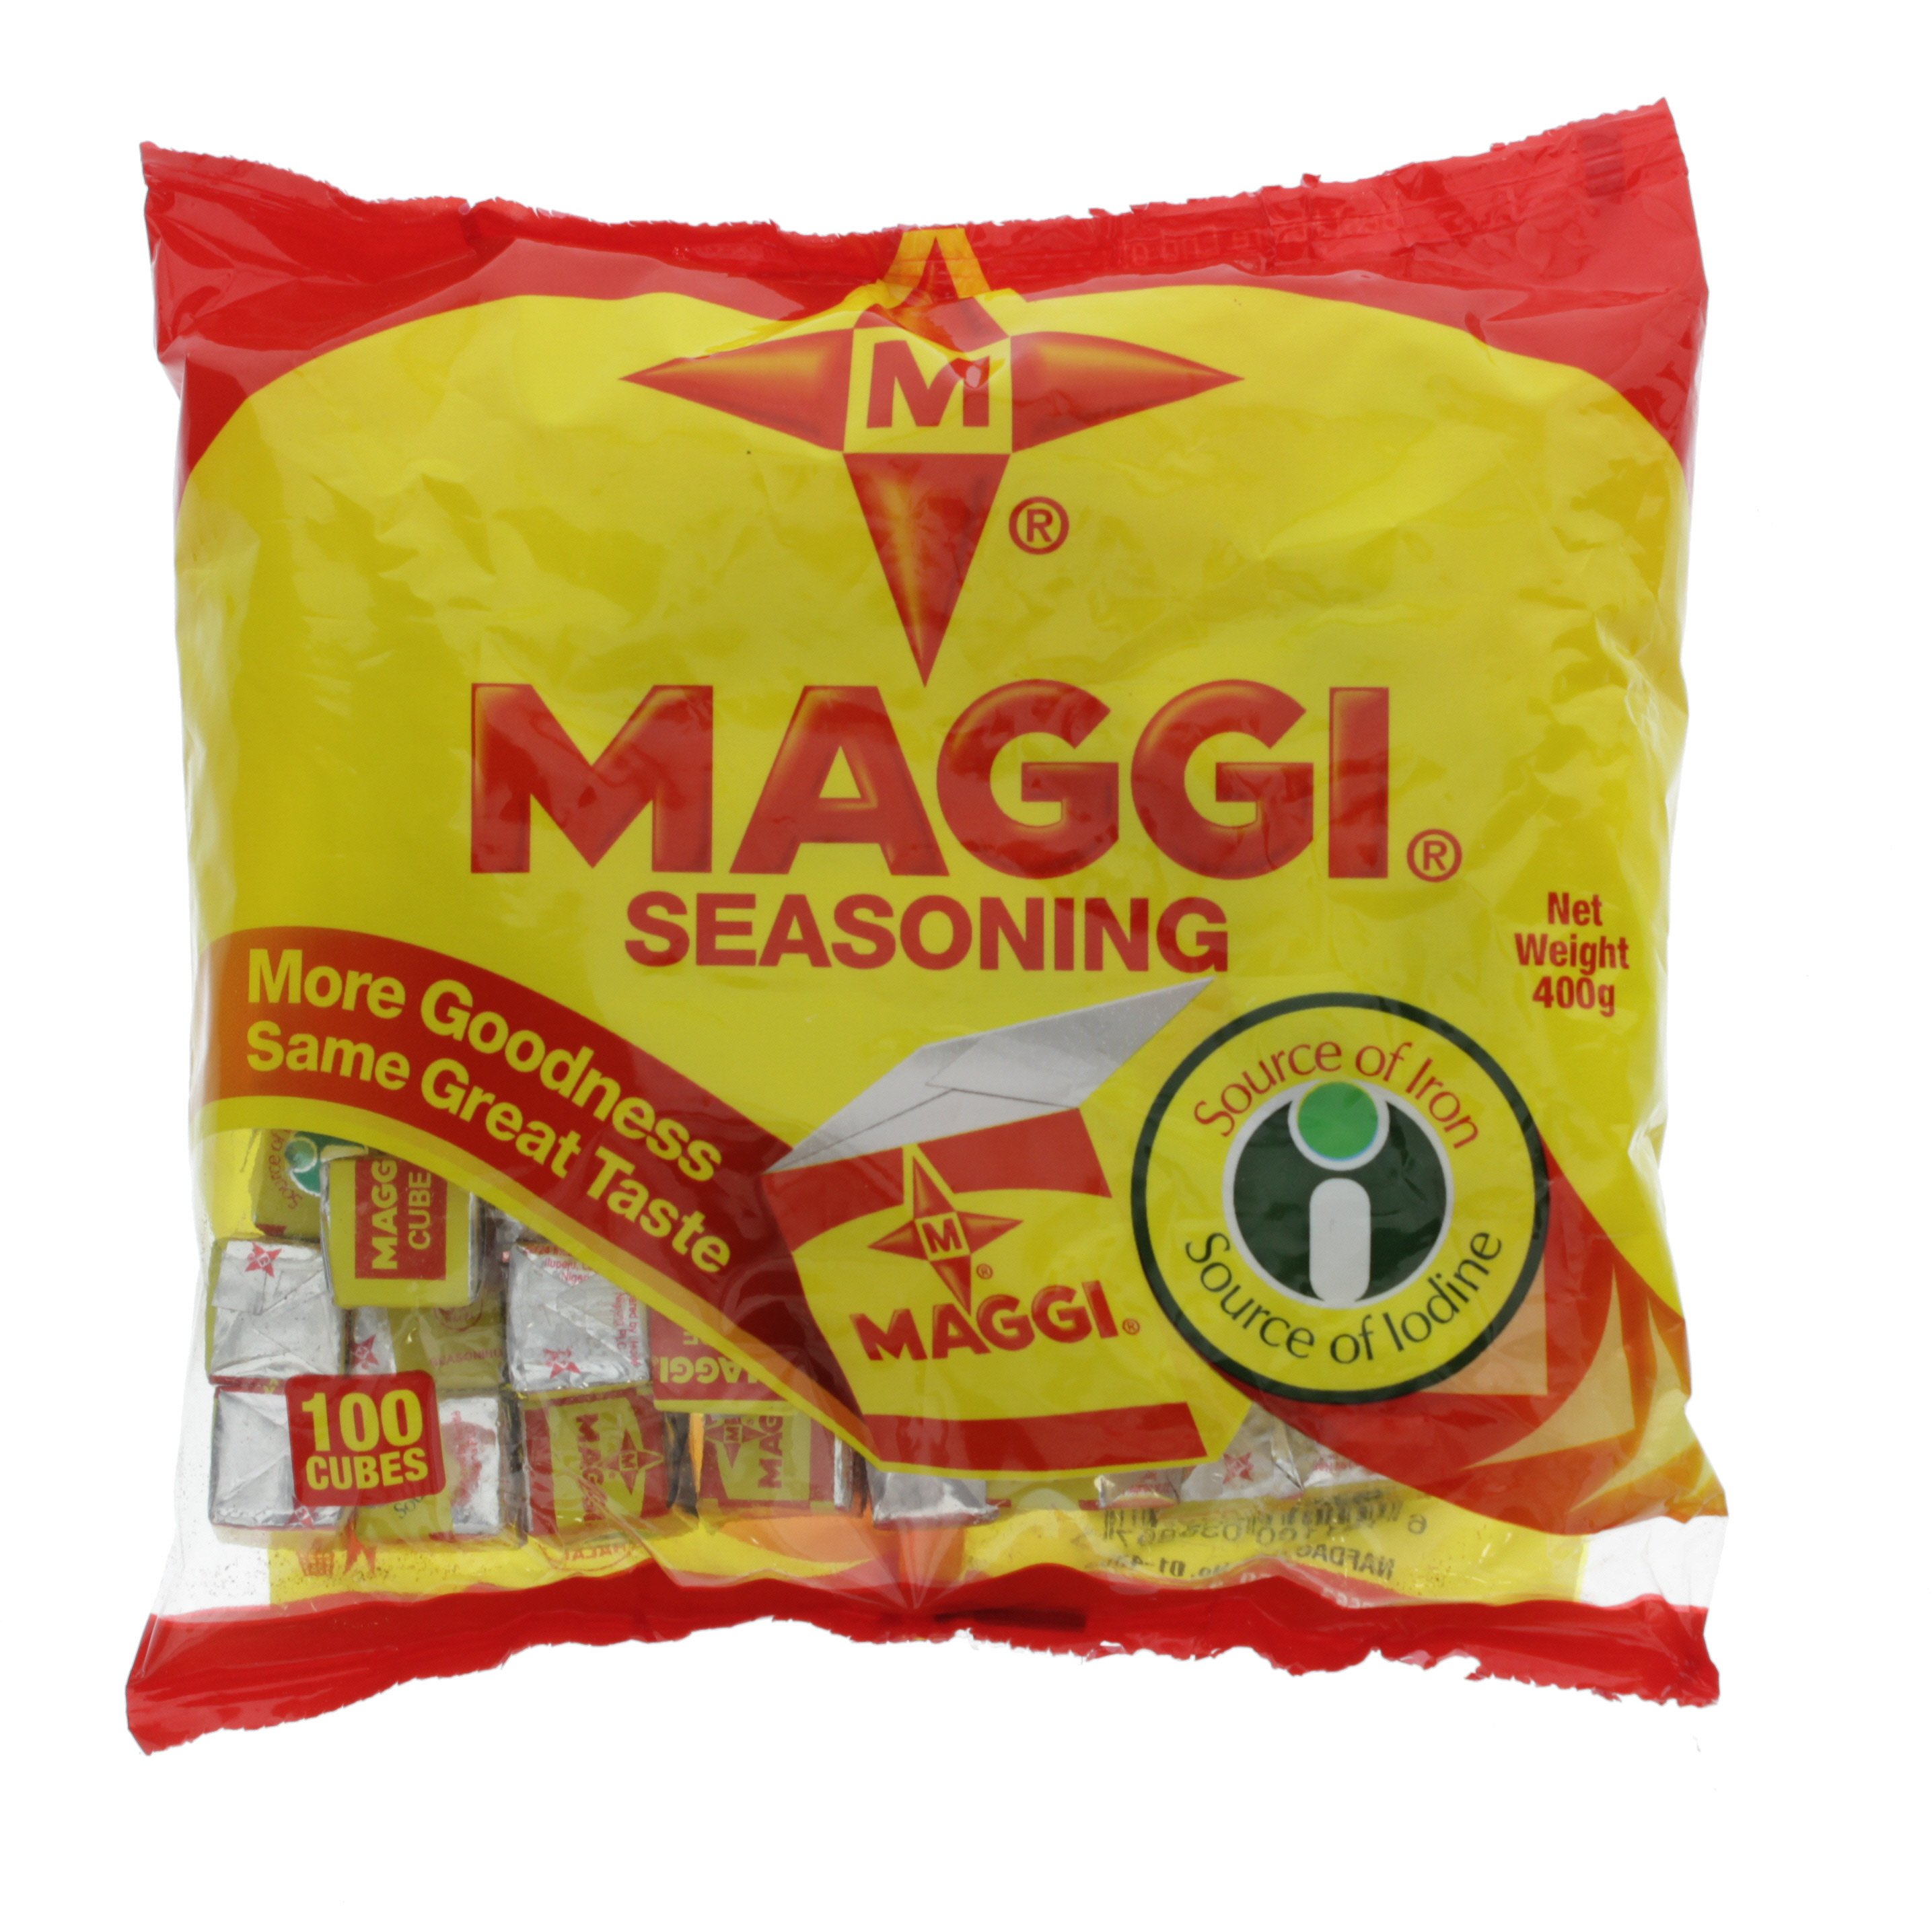 ingredients of maggi seasoning